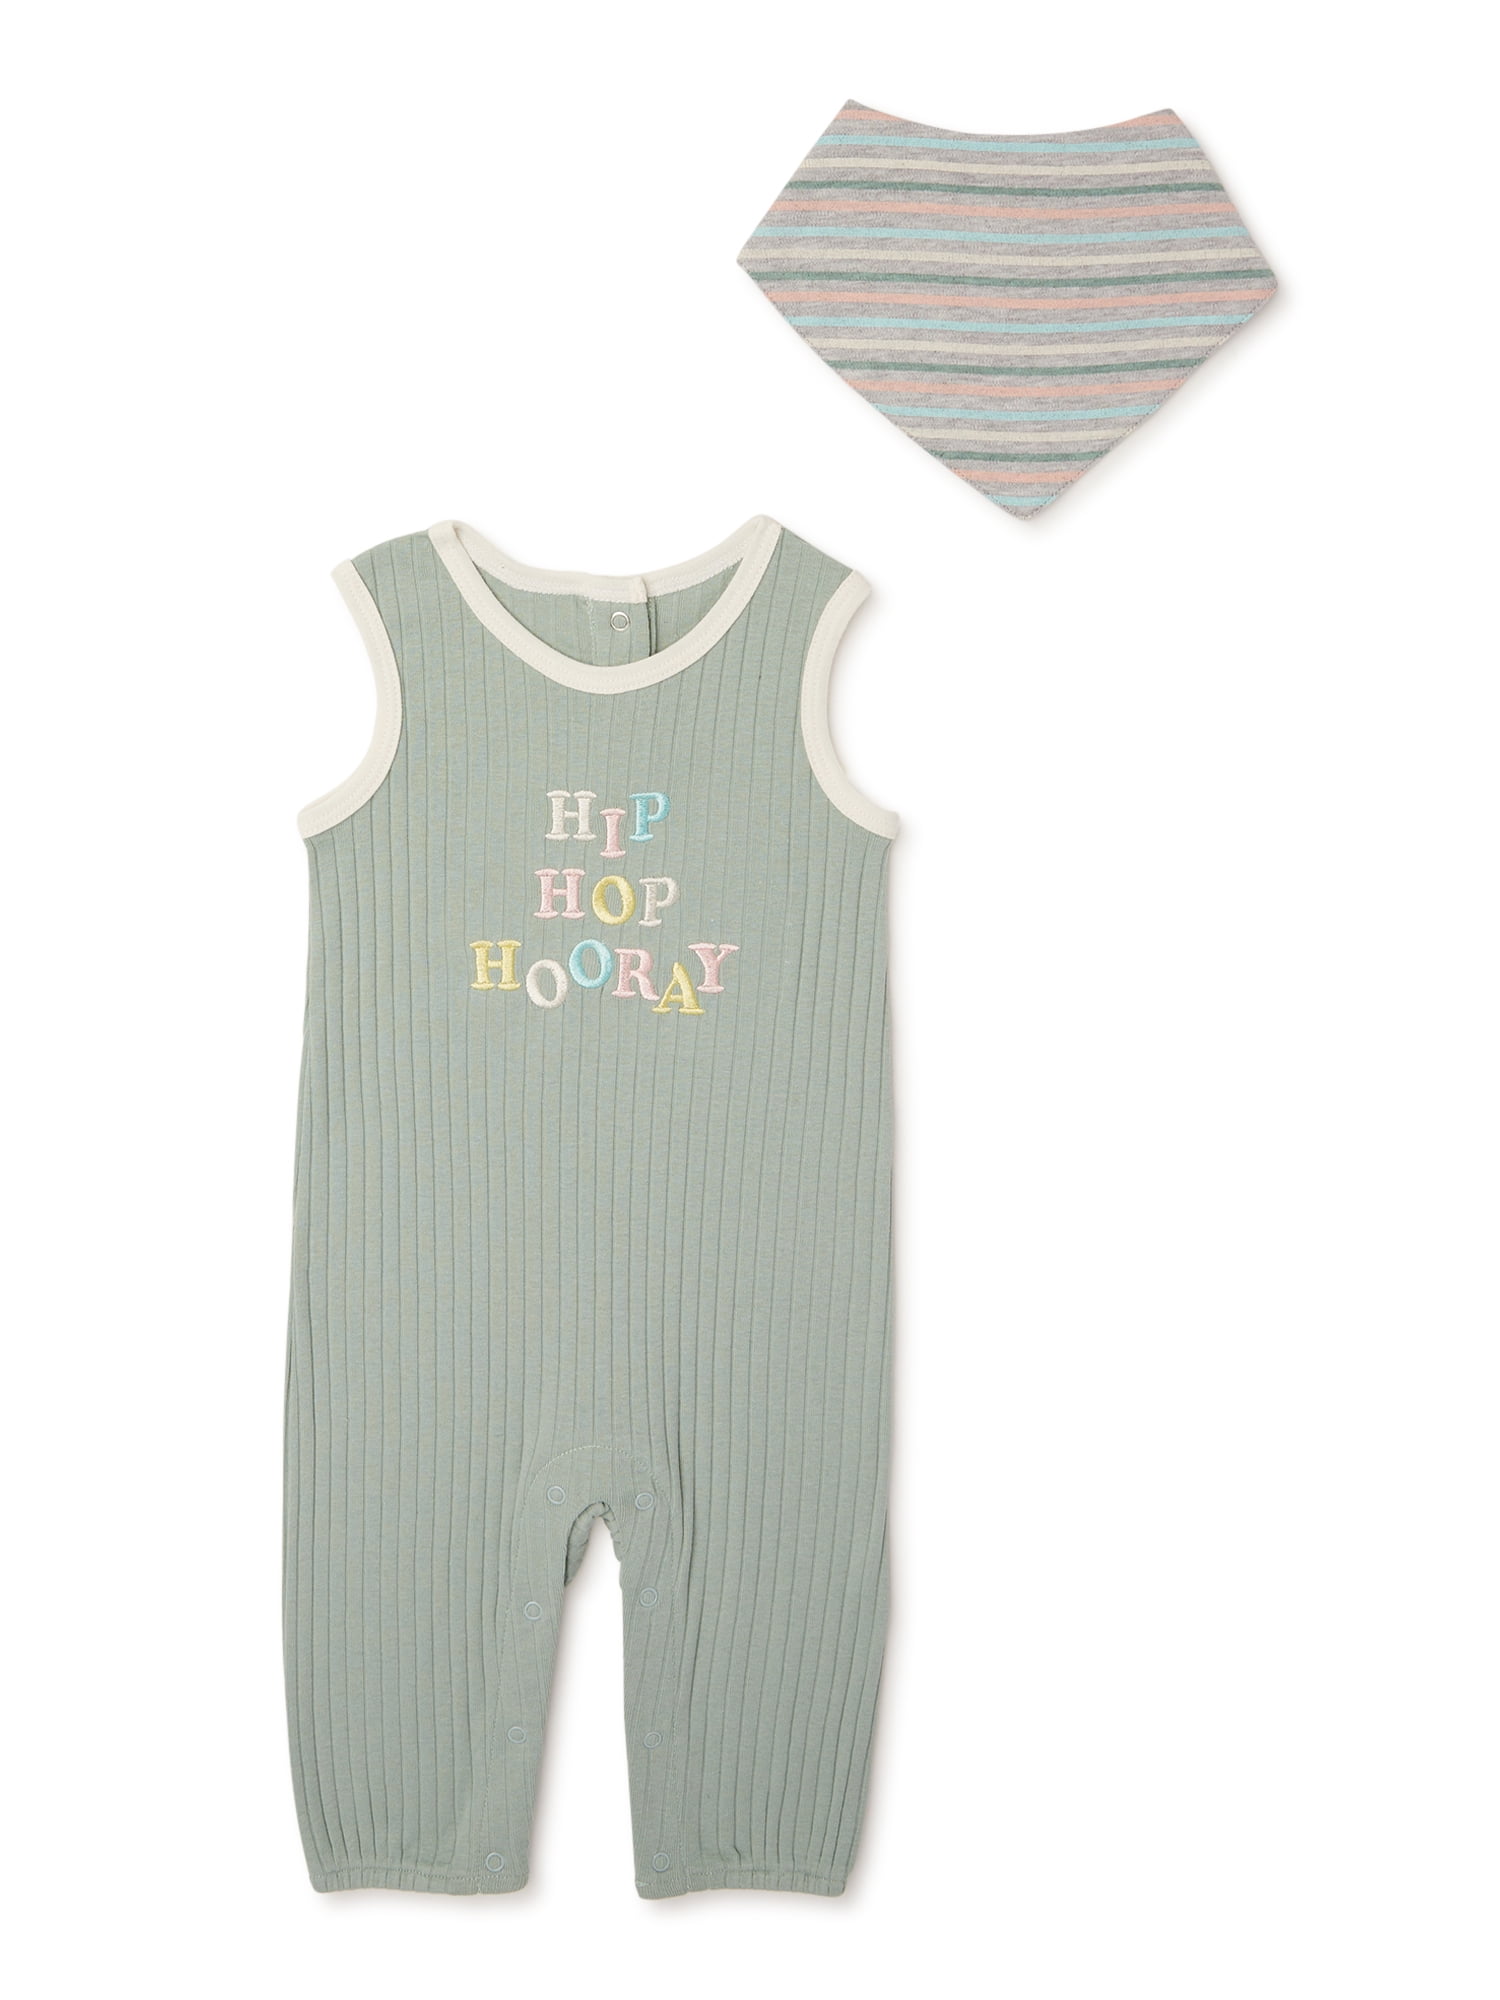 Oksea Infant Toddler Baby Girls Romper Trouser Outfits Letter Print Romper Bodysuit+Sunflower Pants Set